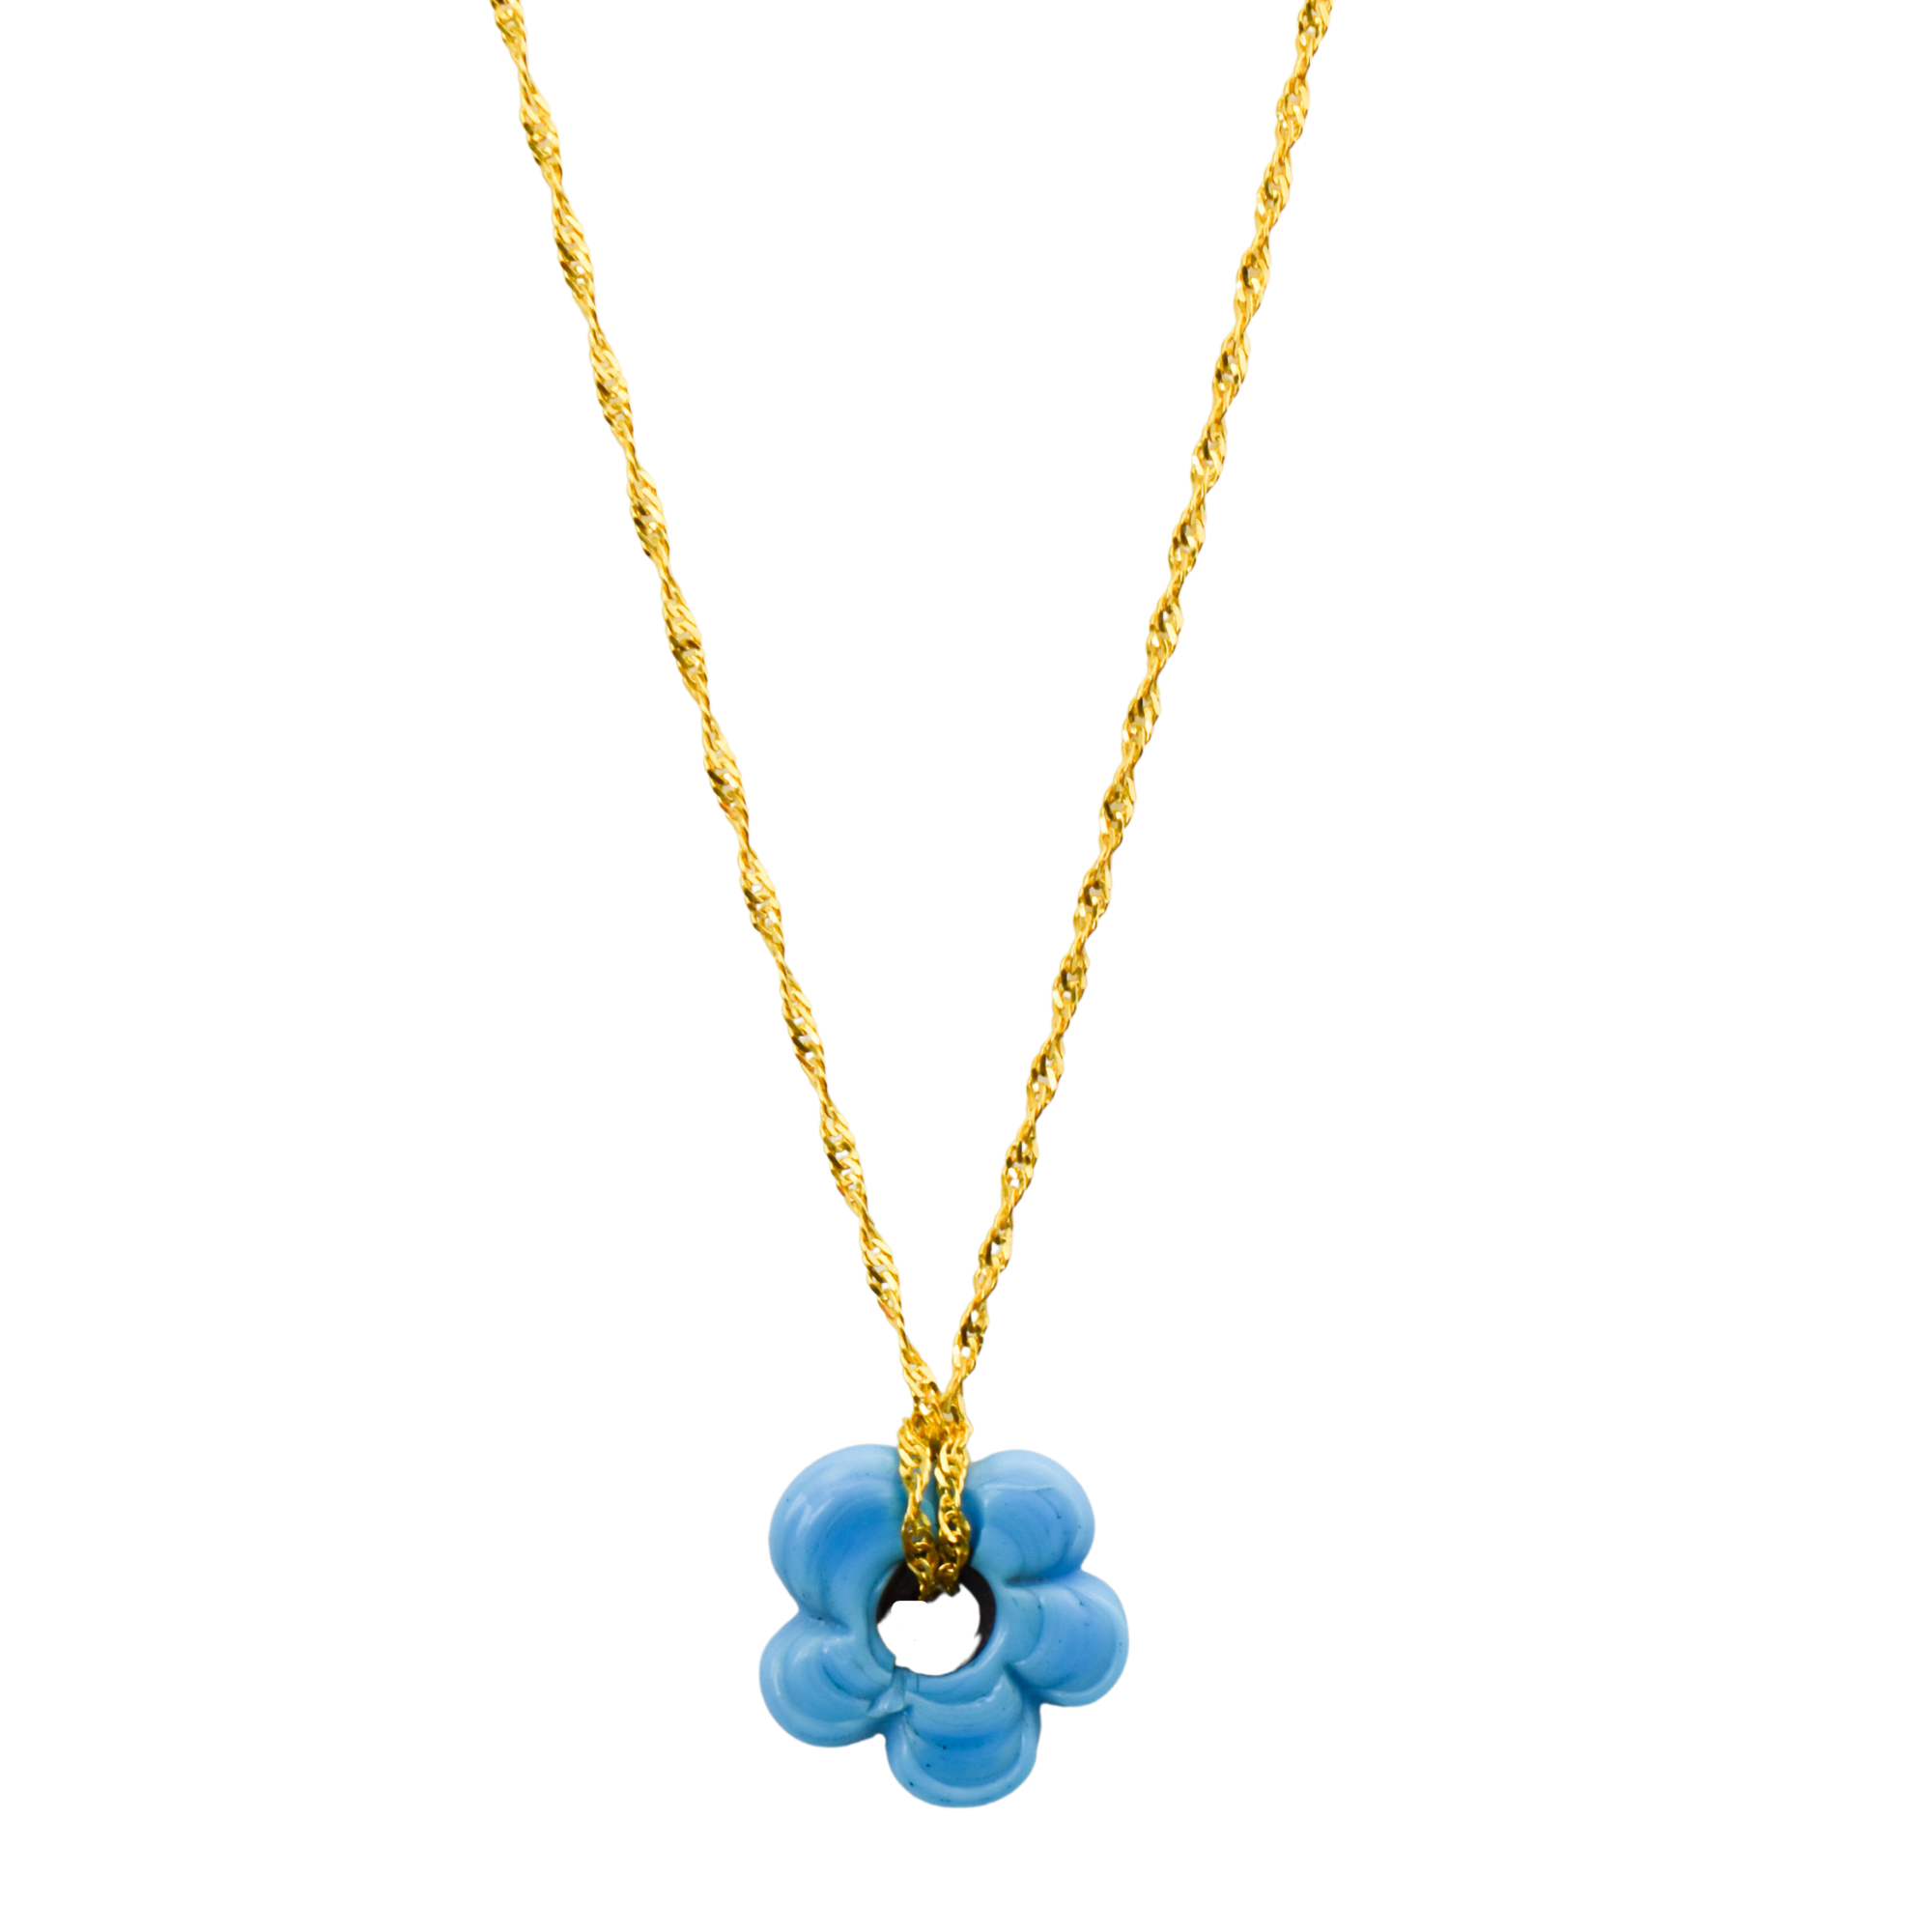 Fleur Necklace - Turquoise